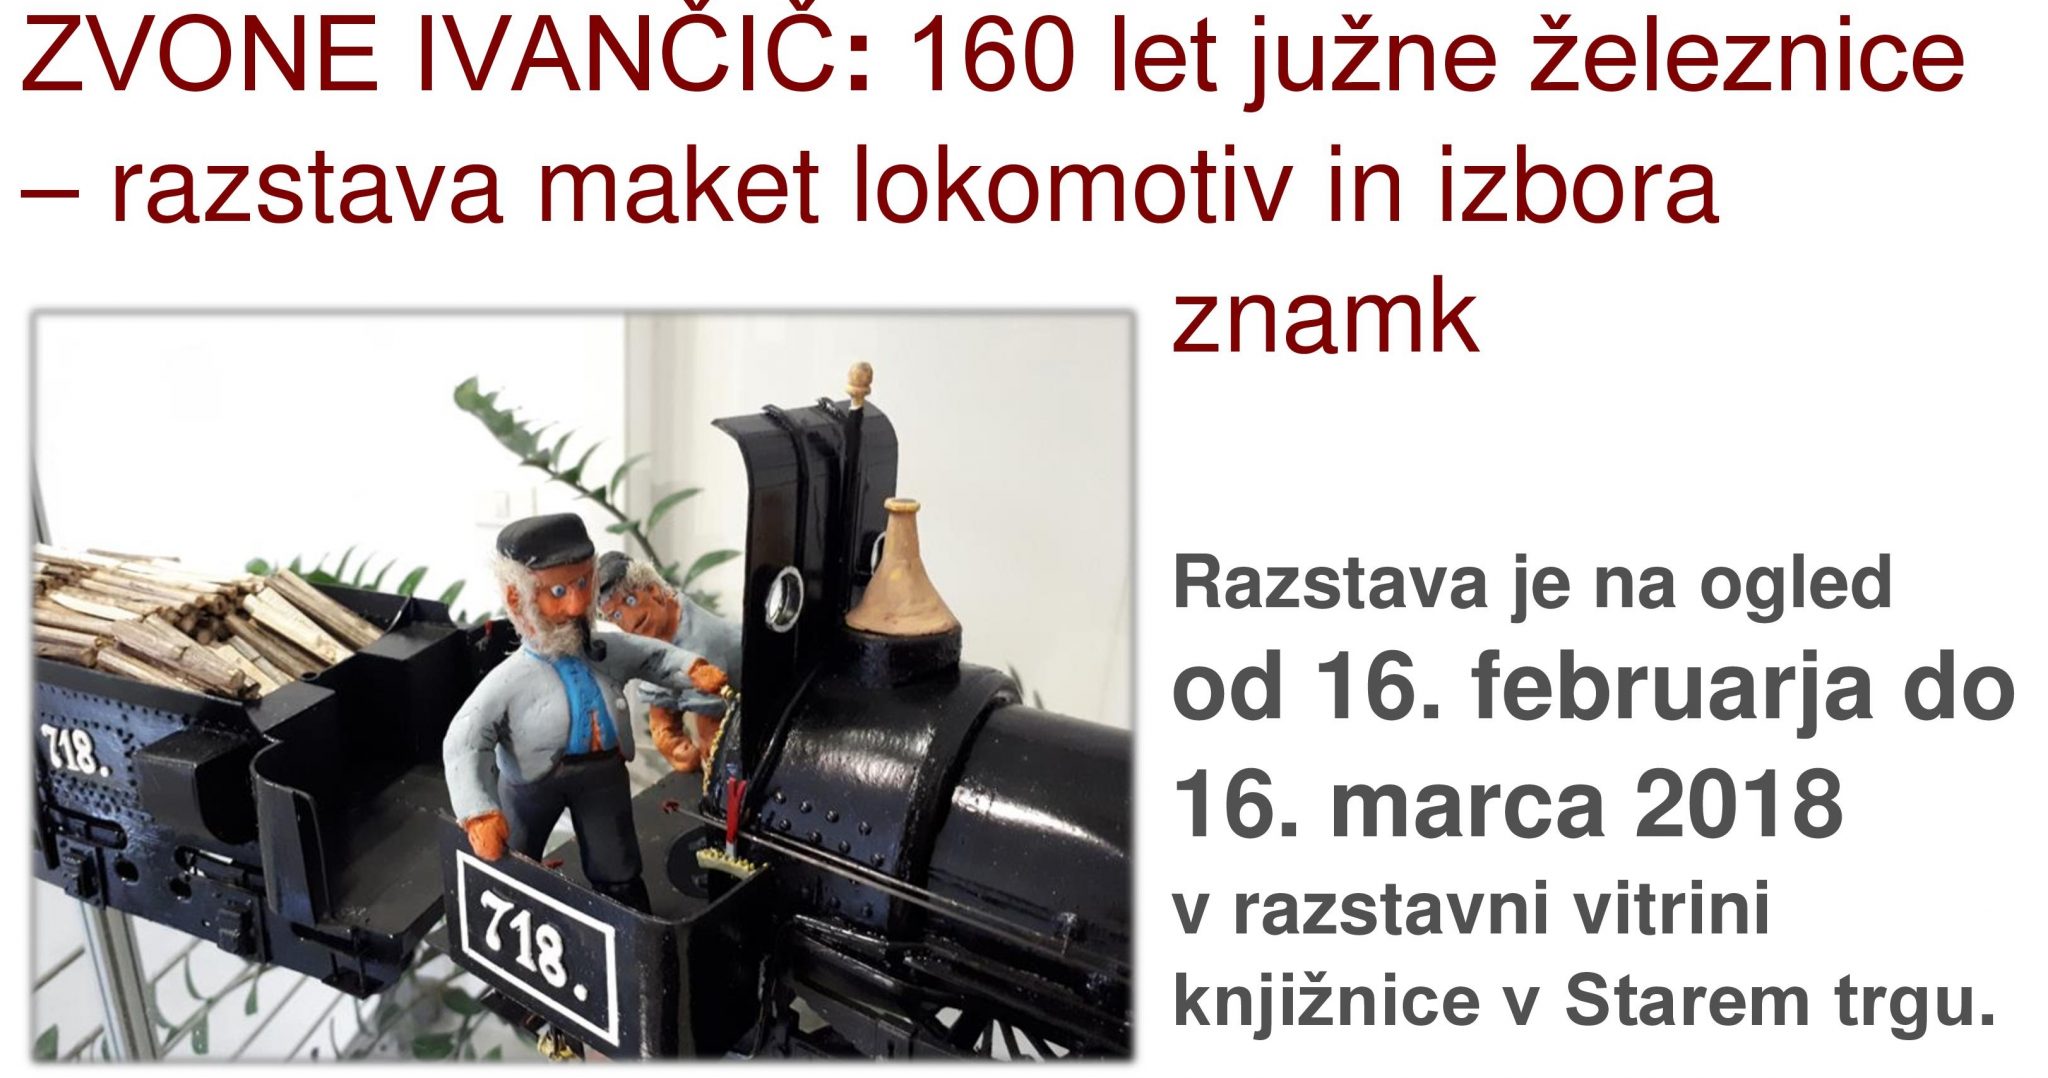 cover 7 - Zvone Ivančič - razstava maket lokomotiv in izbora znamk